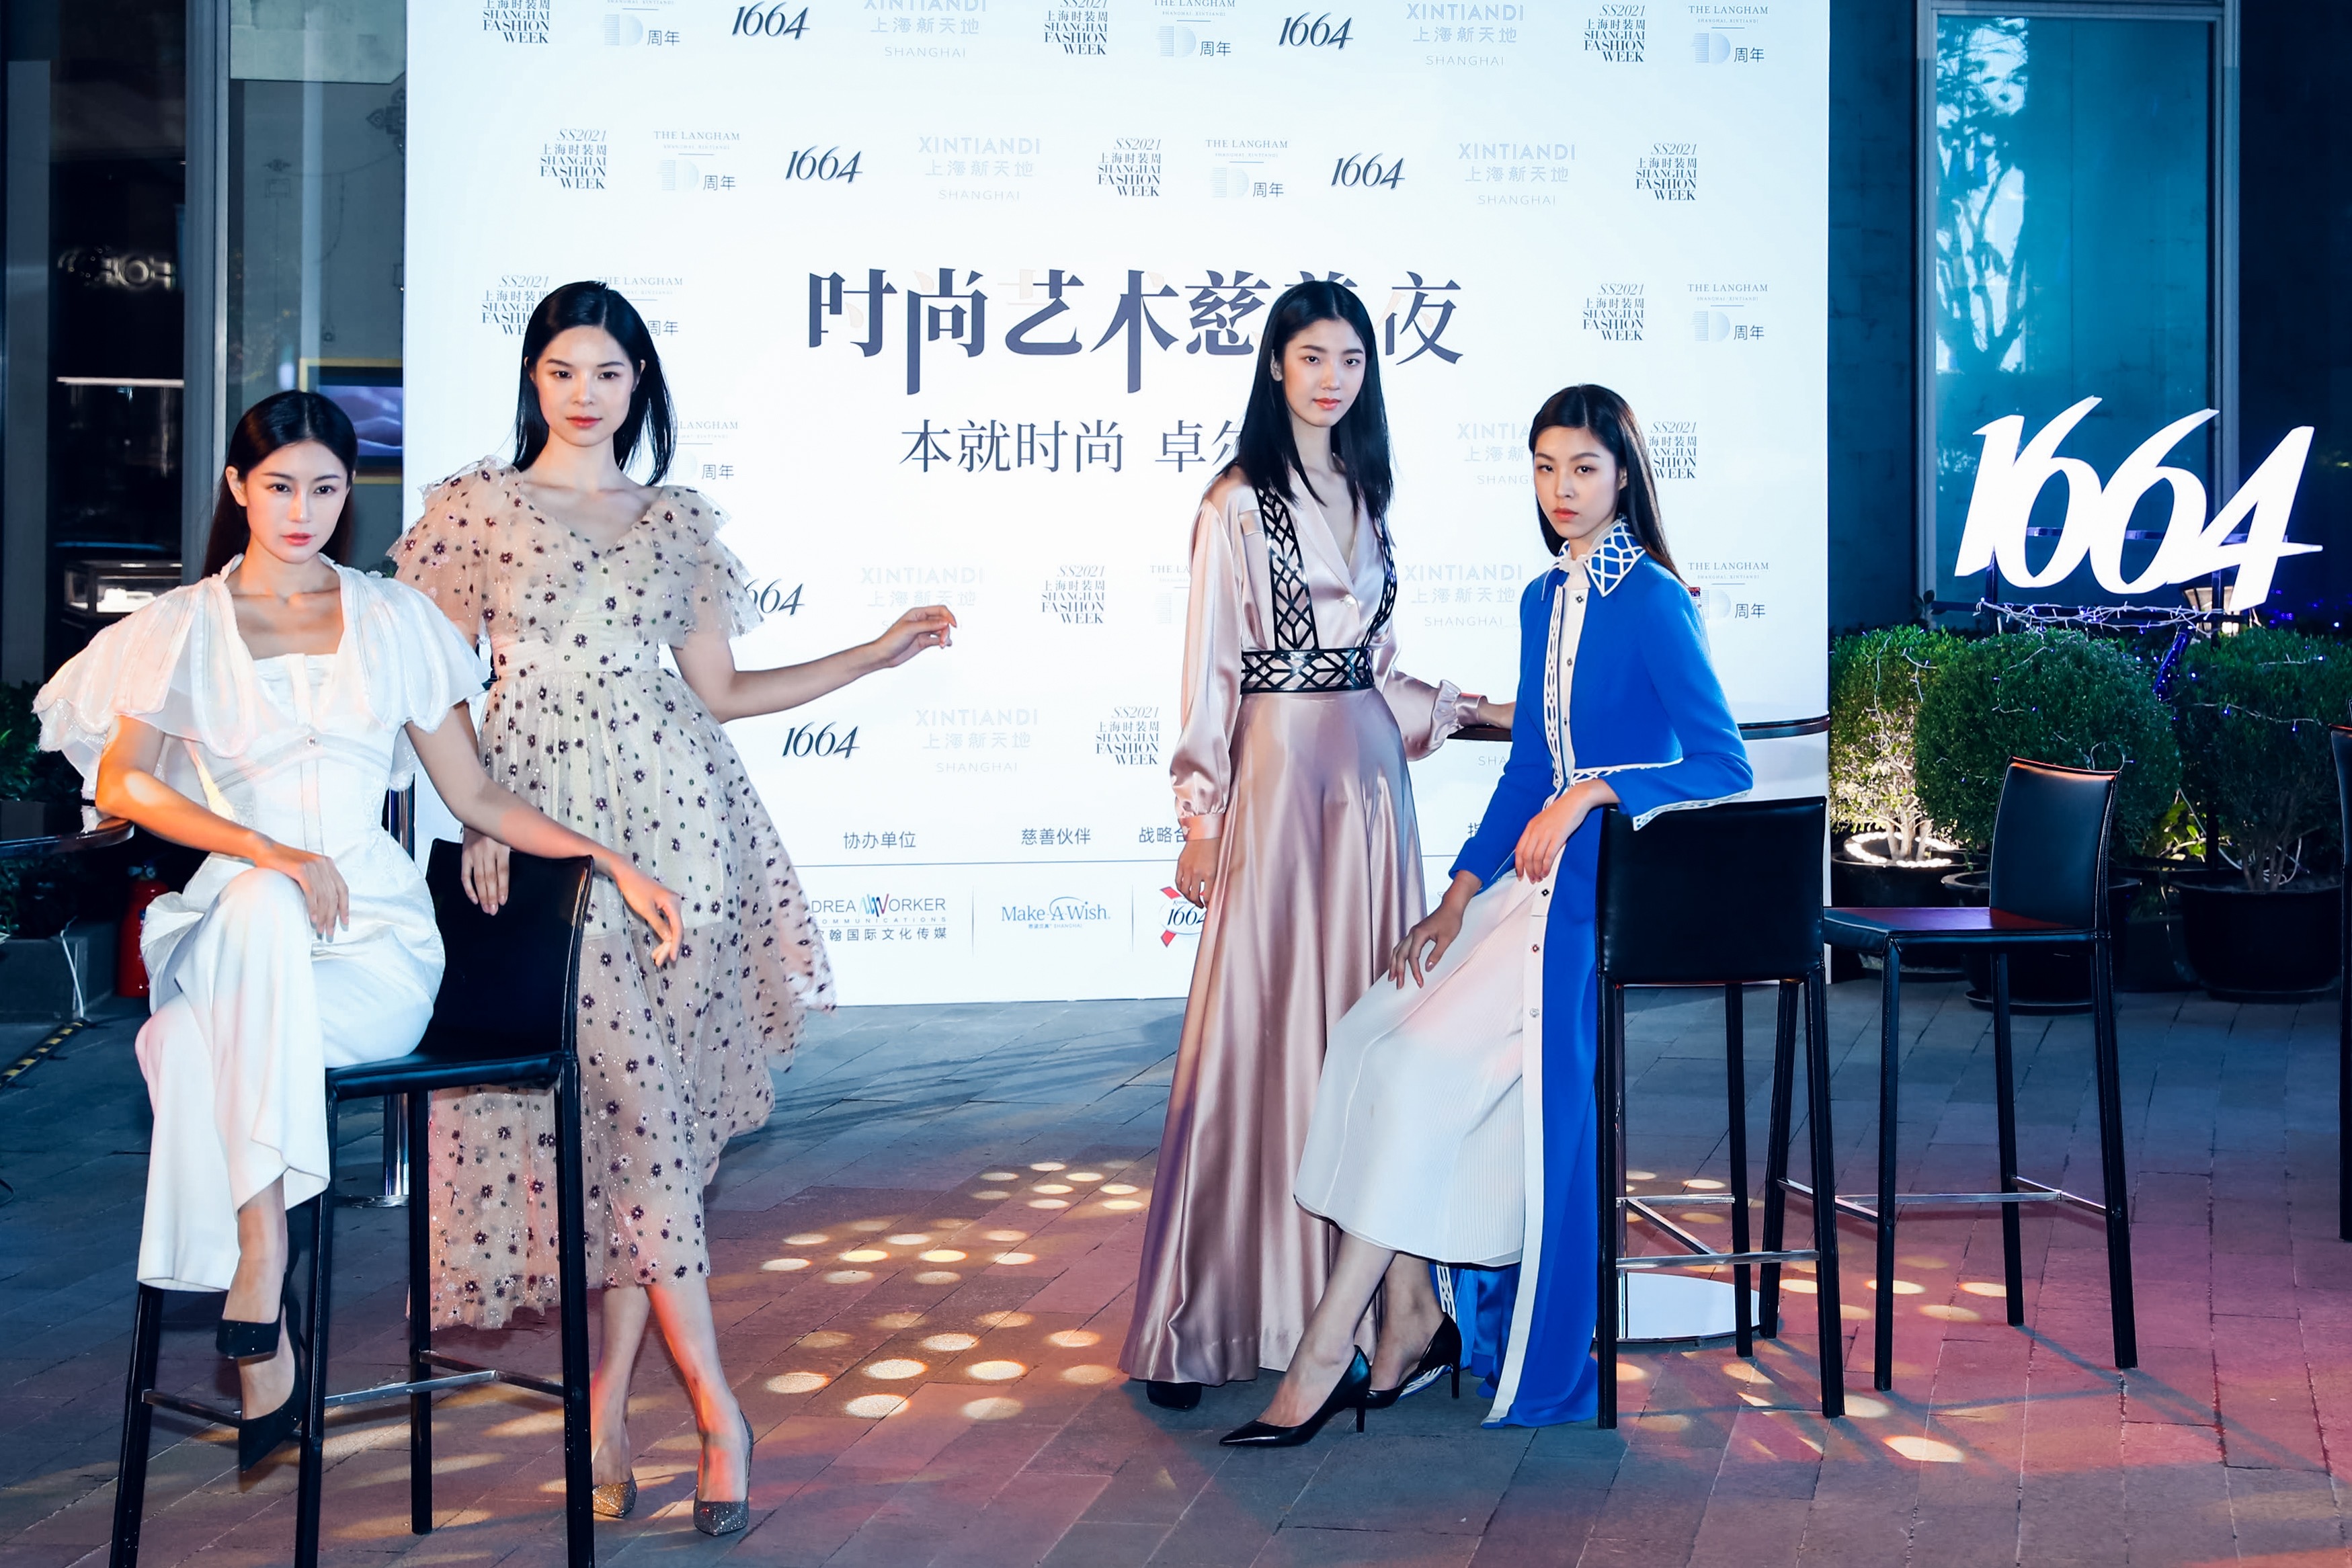 时尚艺术慈善夜于上海新天地朗廷酒店温情举行 后疫情时代时尚的责任、艺术的力量、人心的温暖